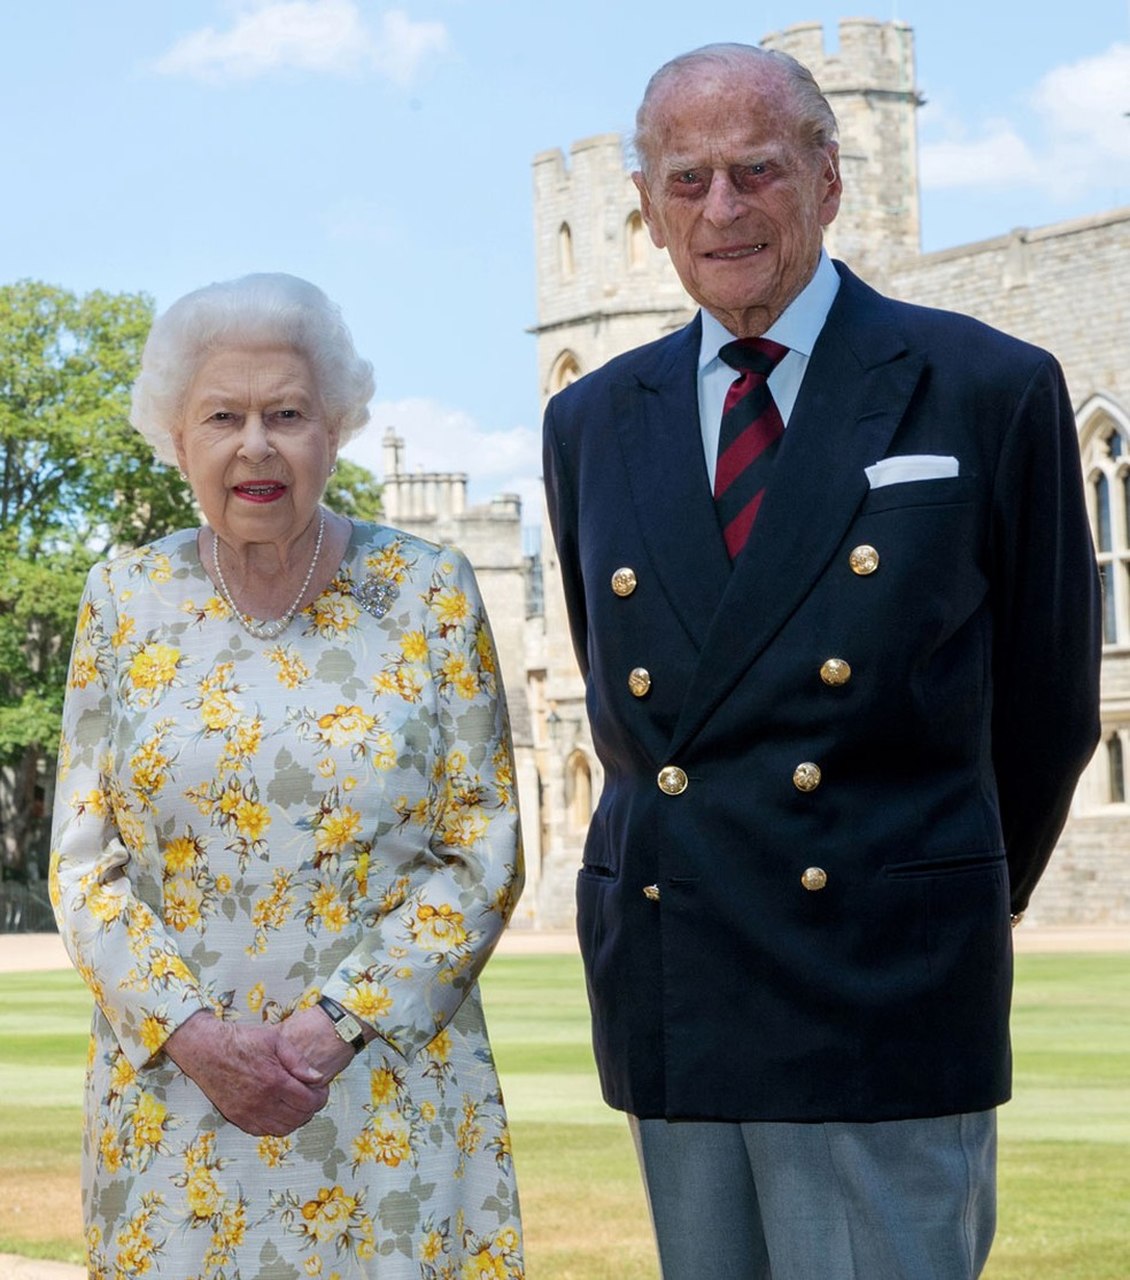 Príncipe Philip, de 99 anos, é internado após passar mal